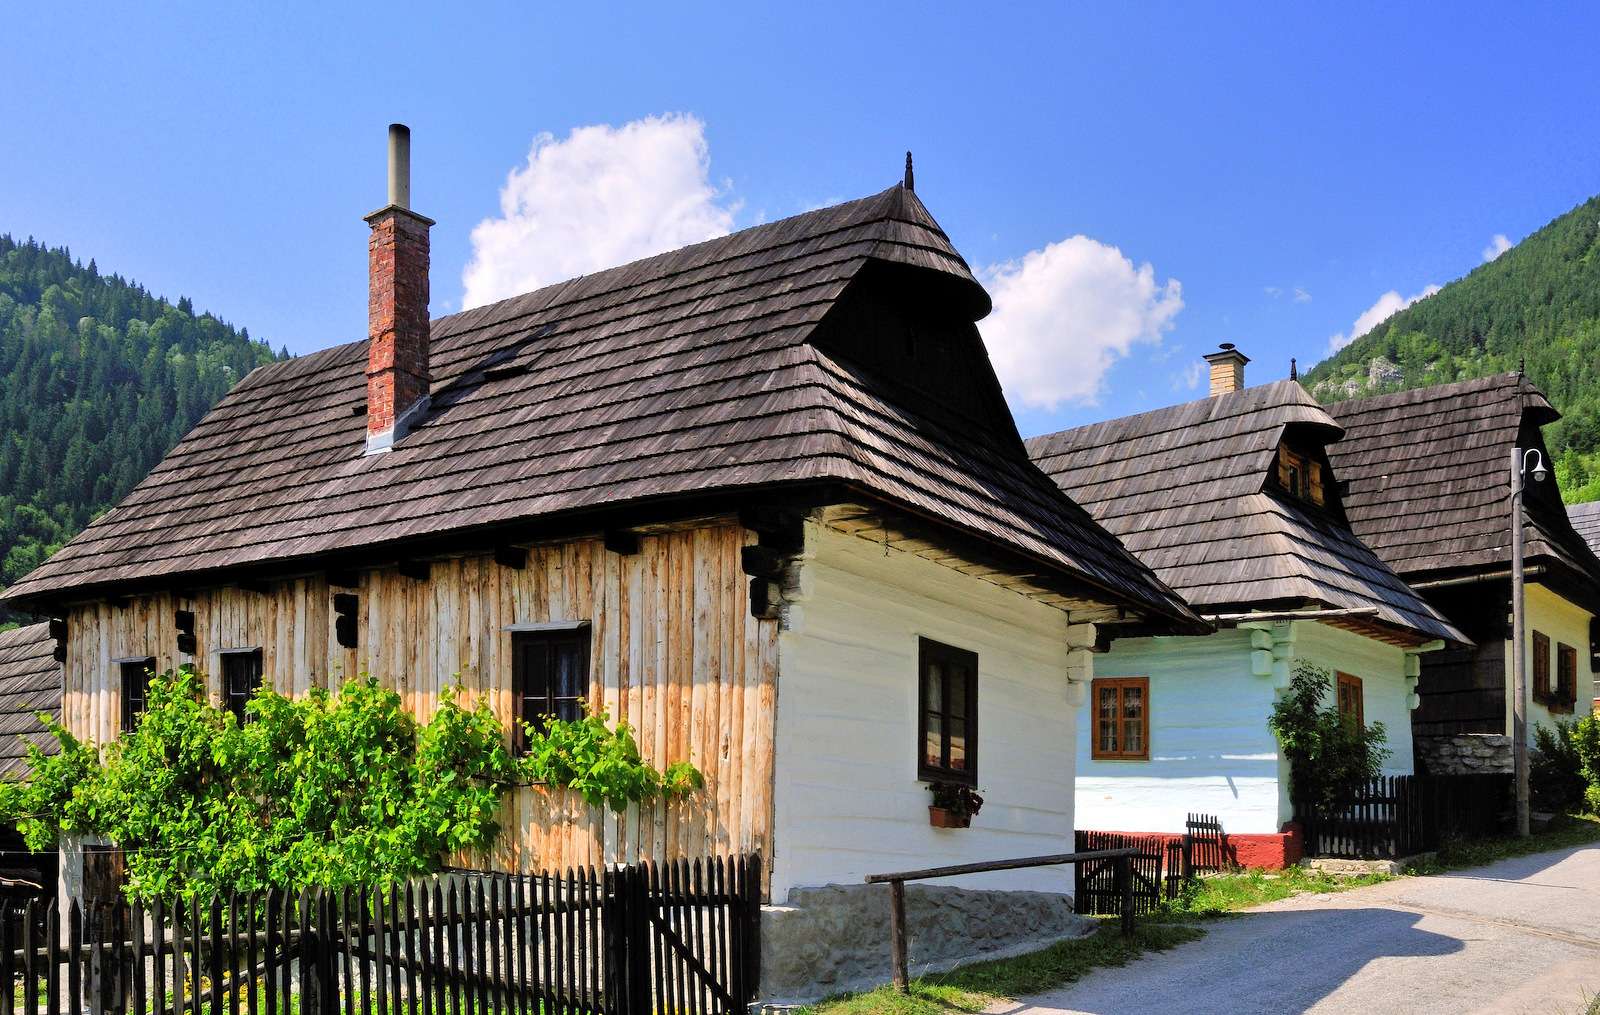 Влколинец - историческо село в Словакия (музей на открито) онлайн пъзел